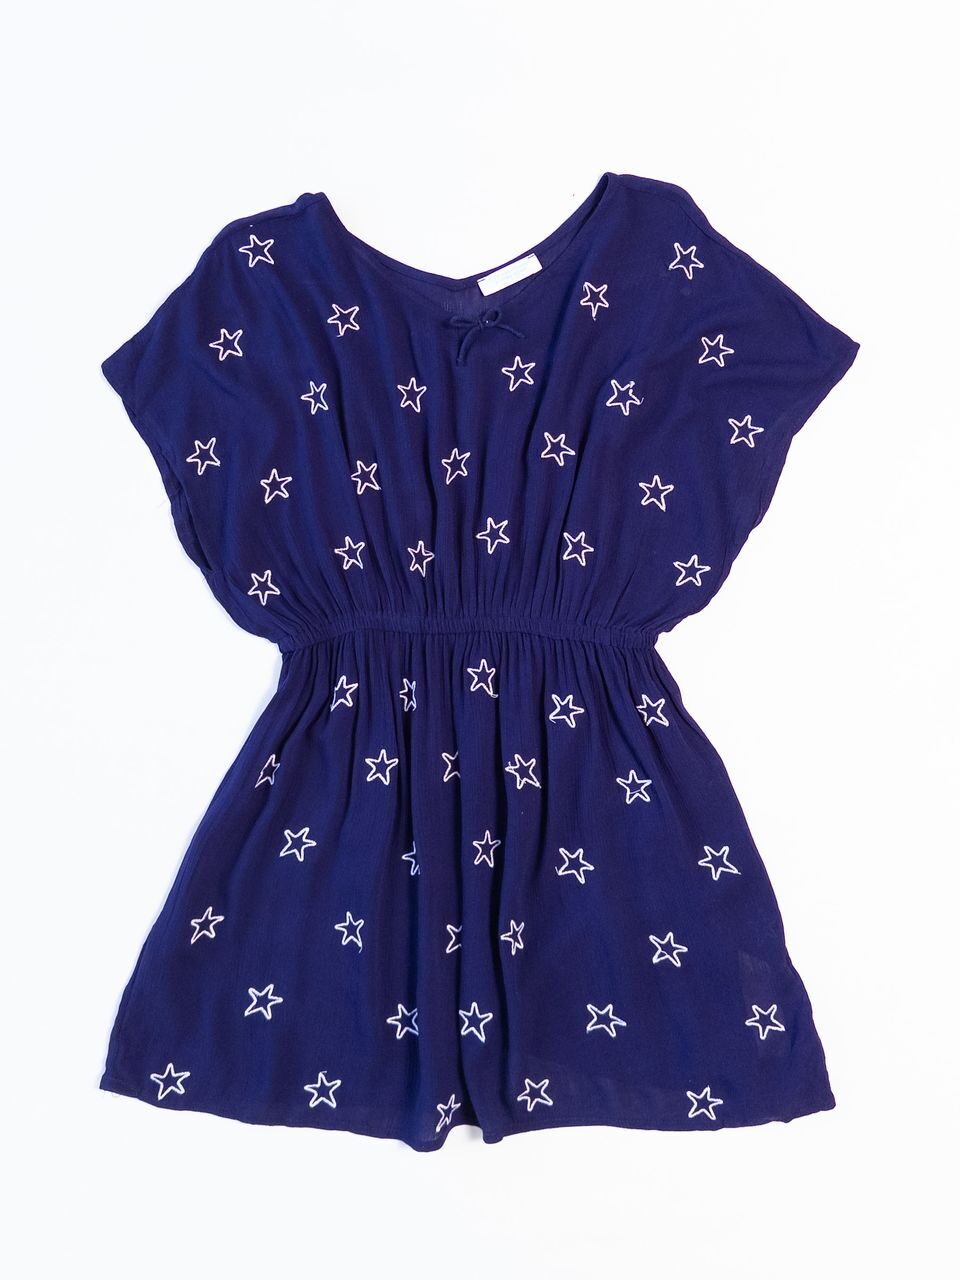 Платье-туника в поясе резинка цвет фиолетовый принт Звезды на рост 140 см 9-10 лет Primark